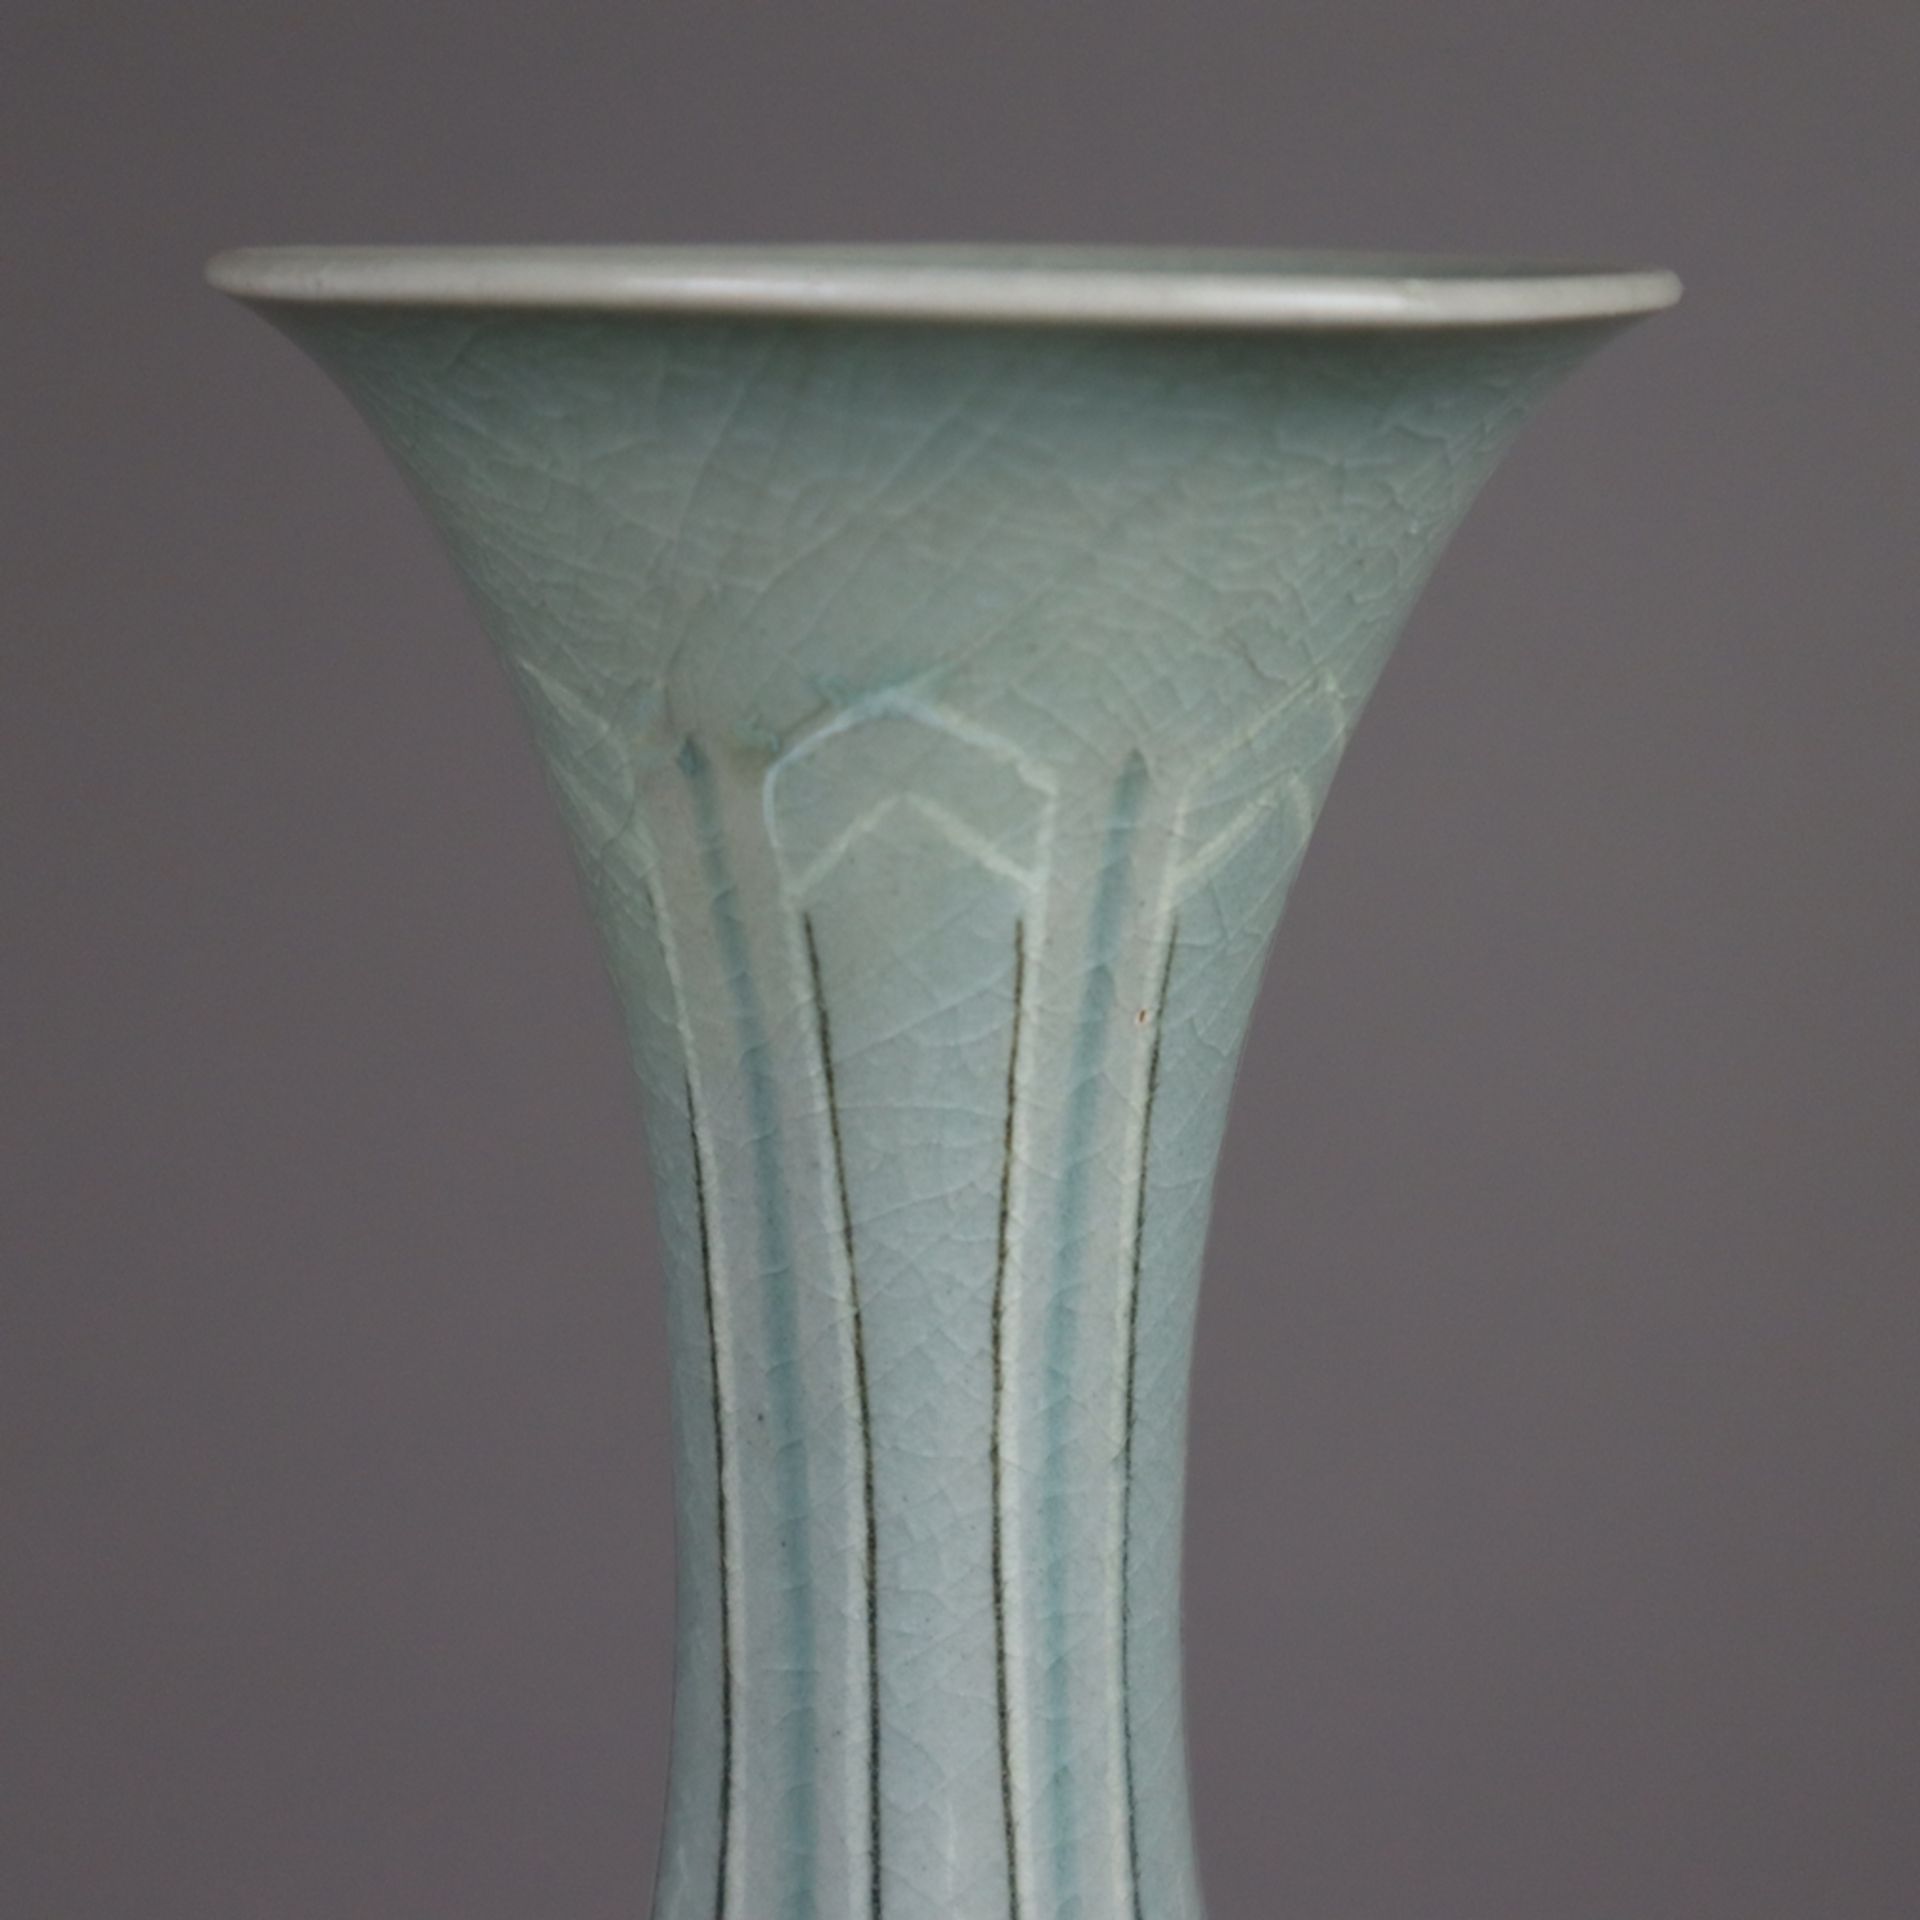 Vase - Korea, in Tropfenform mit fein vernetzter Seladon-Glasur, Dekor mit stil - Bild 3 aus 9